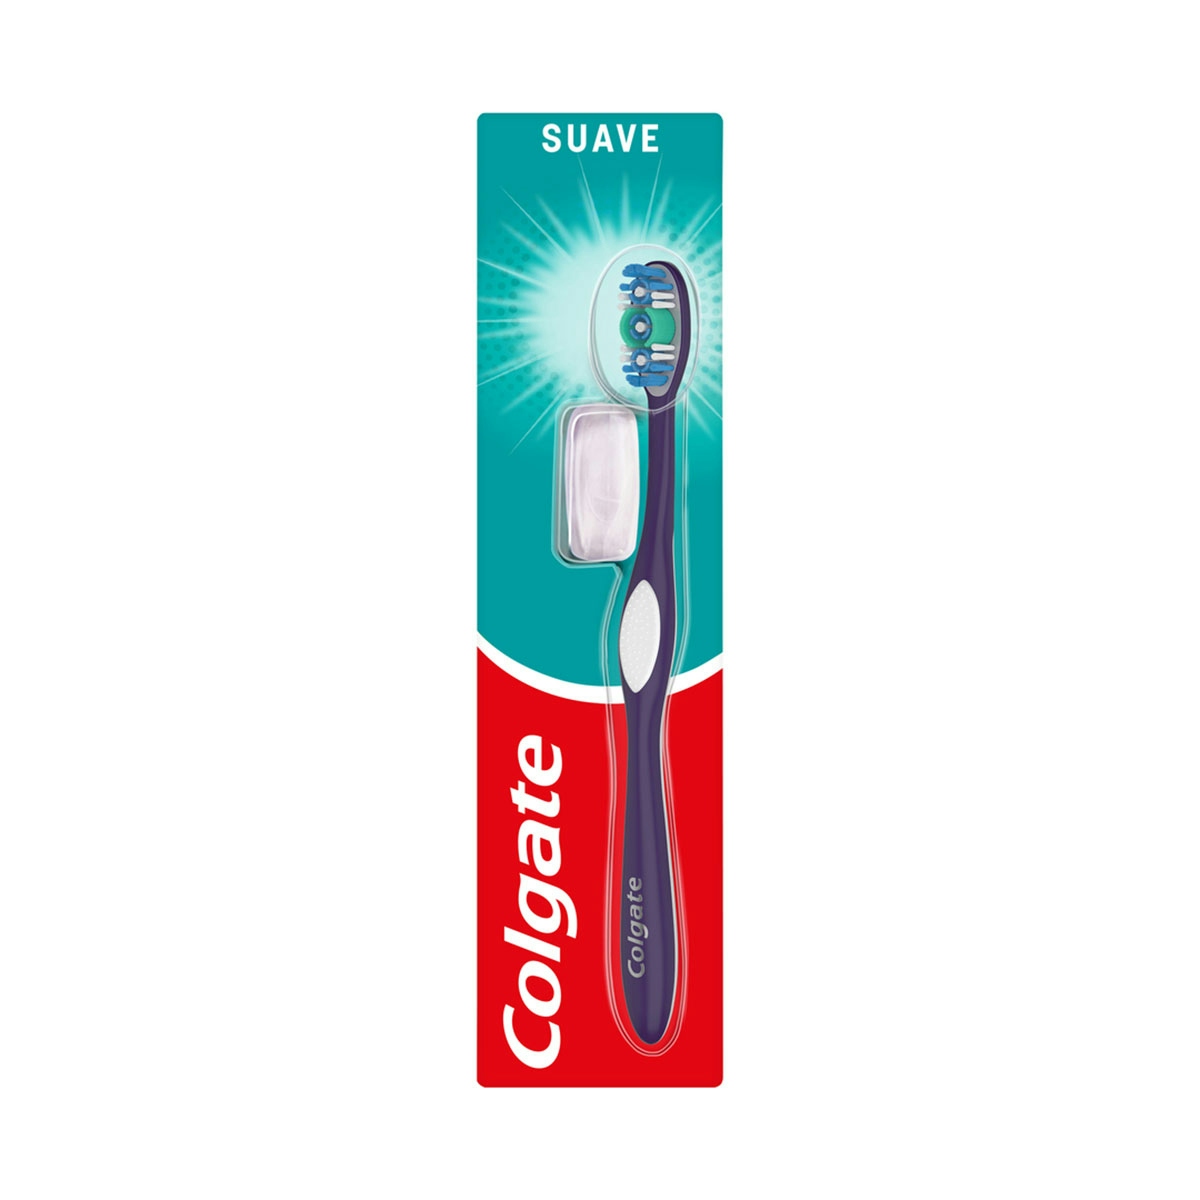 Cepillo de dientes Colgate 360 limpieza completa, suave